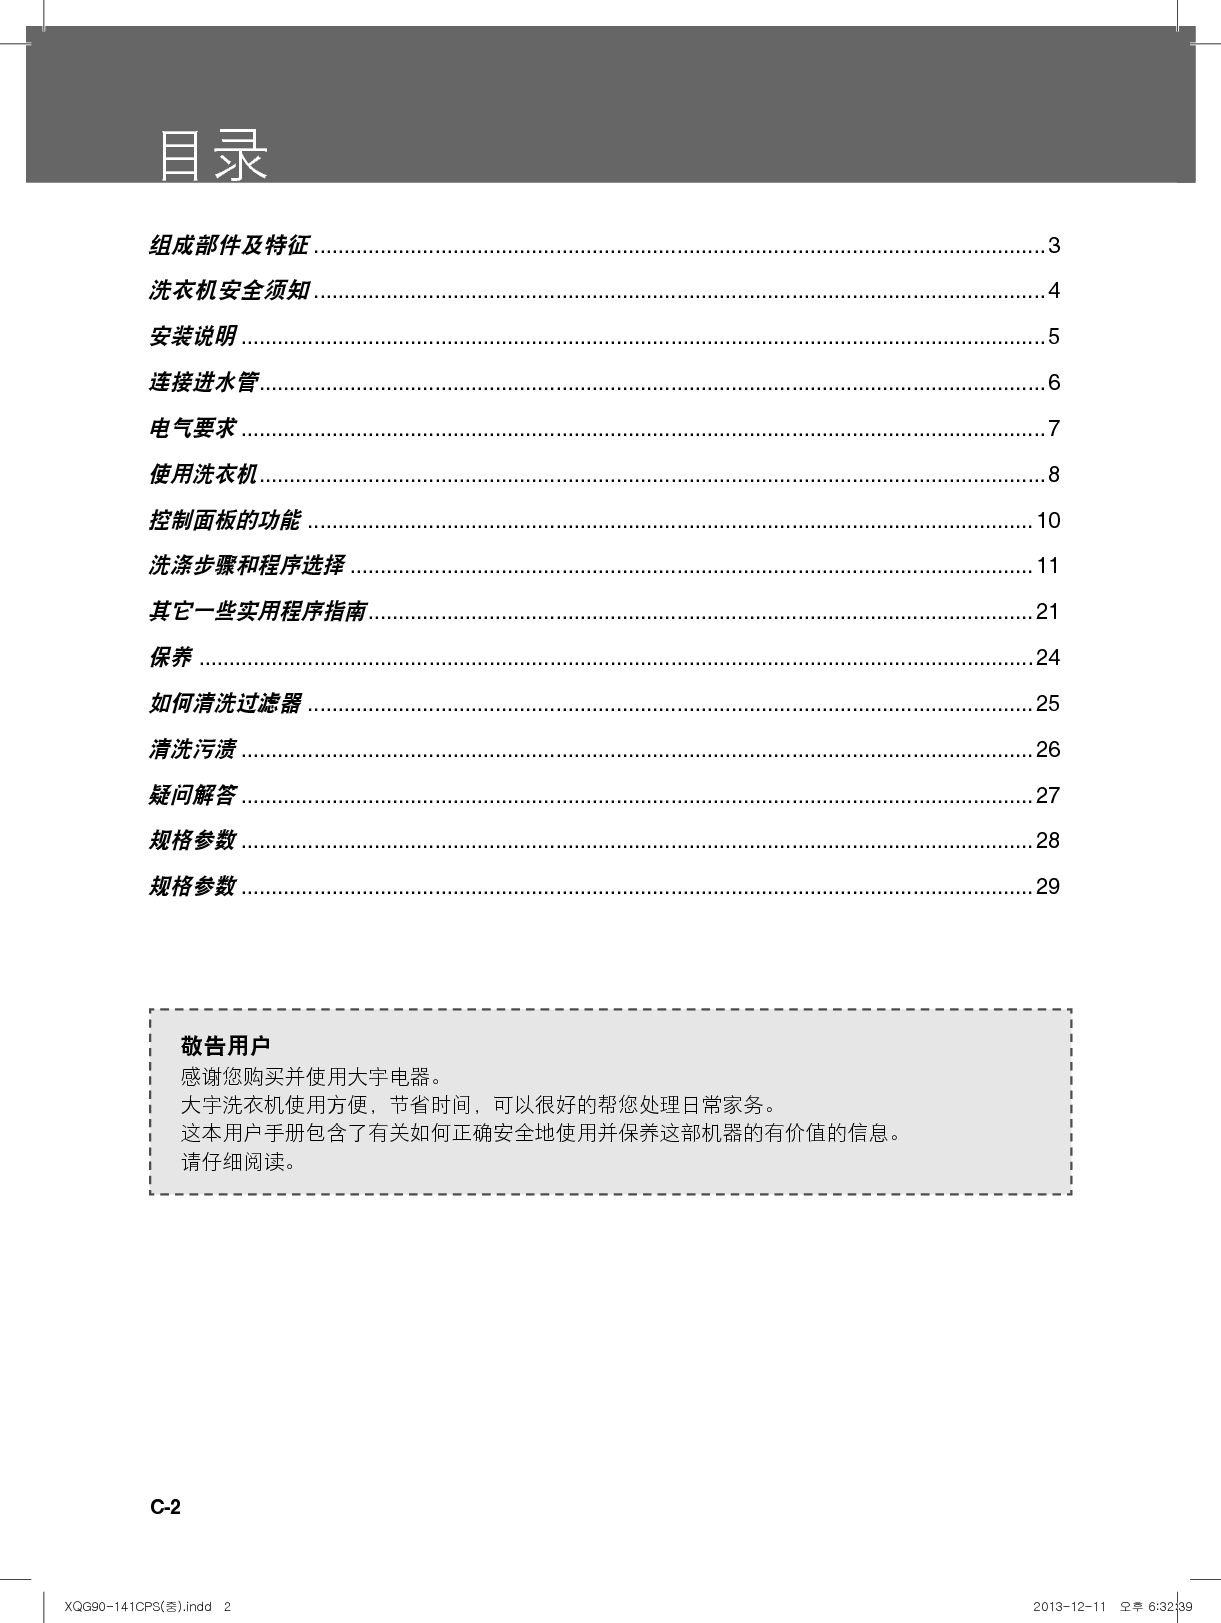 大宇 DAEWOO XQG90-141CPS 用户手册 第1页